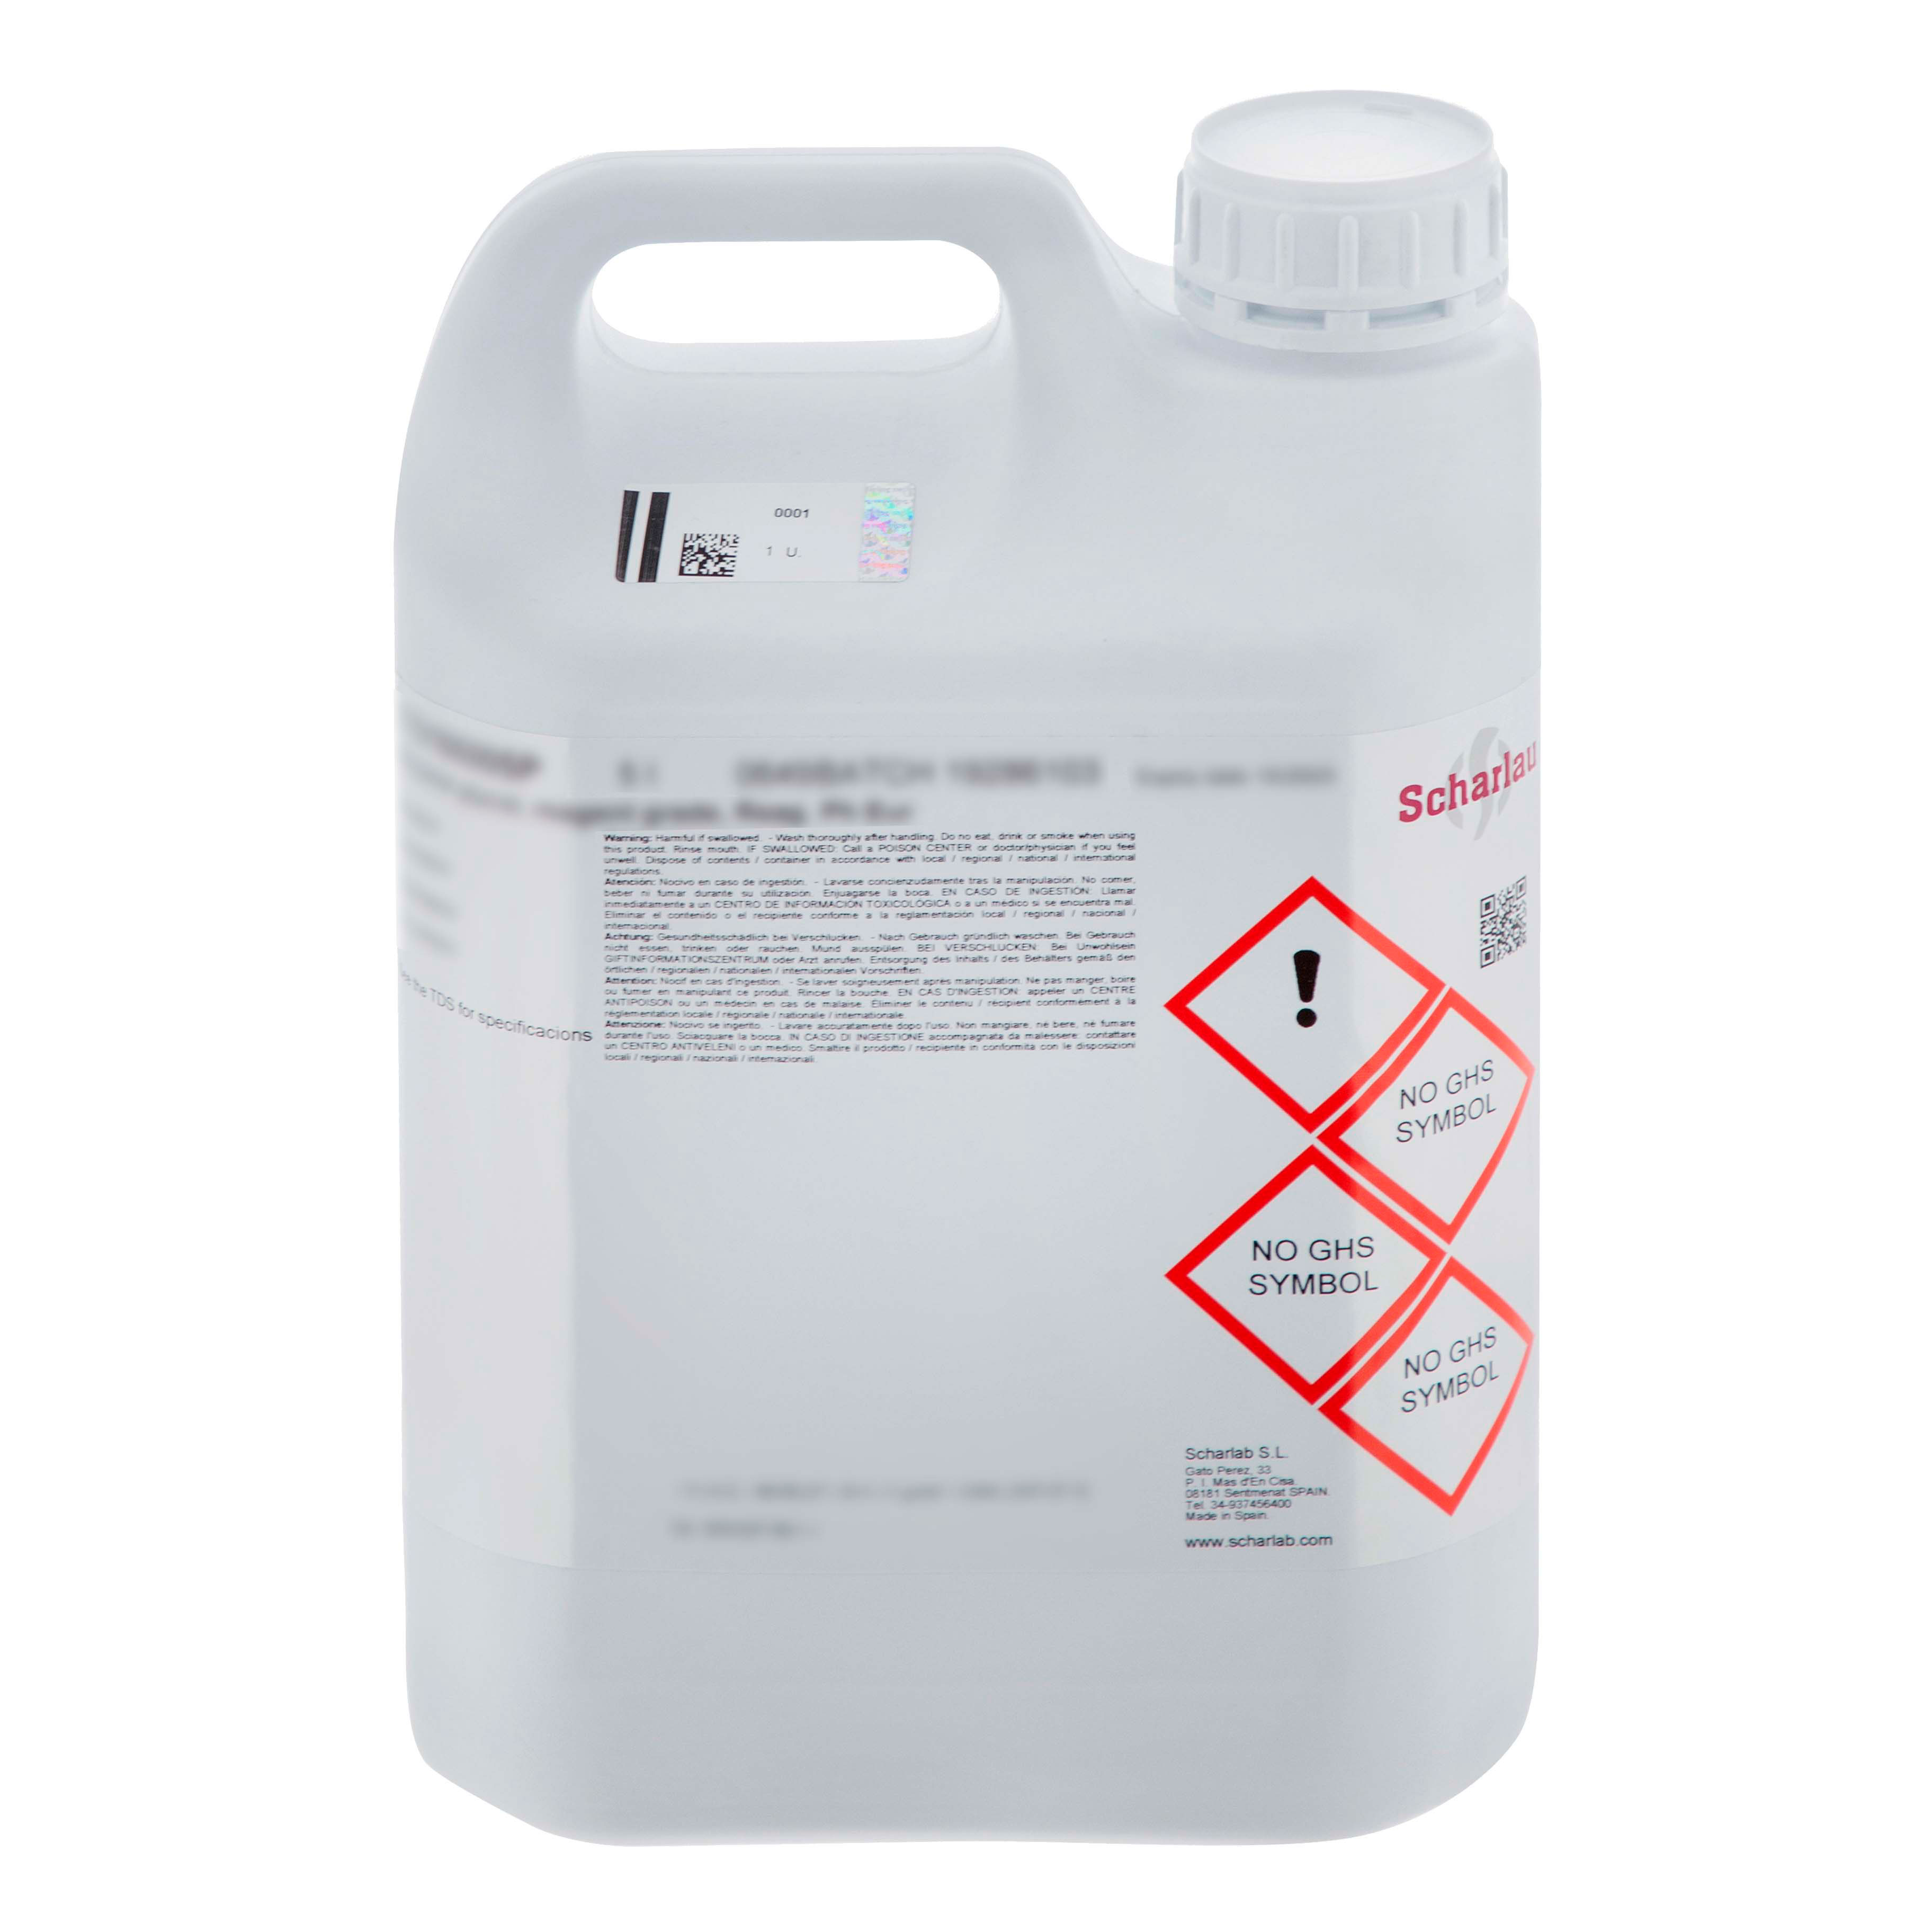 Nitrato de plata 0,0141 Solución estándar normal 0.0 fl oz = 0,5 mg de  cloruro para el ensayo de cloruro